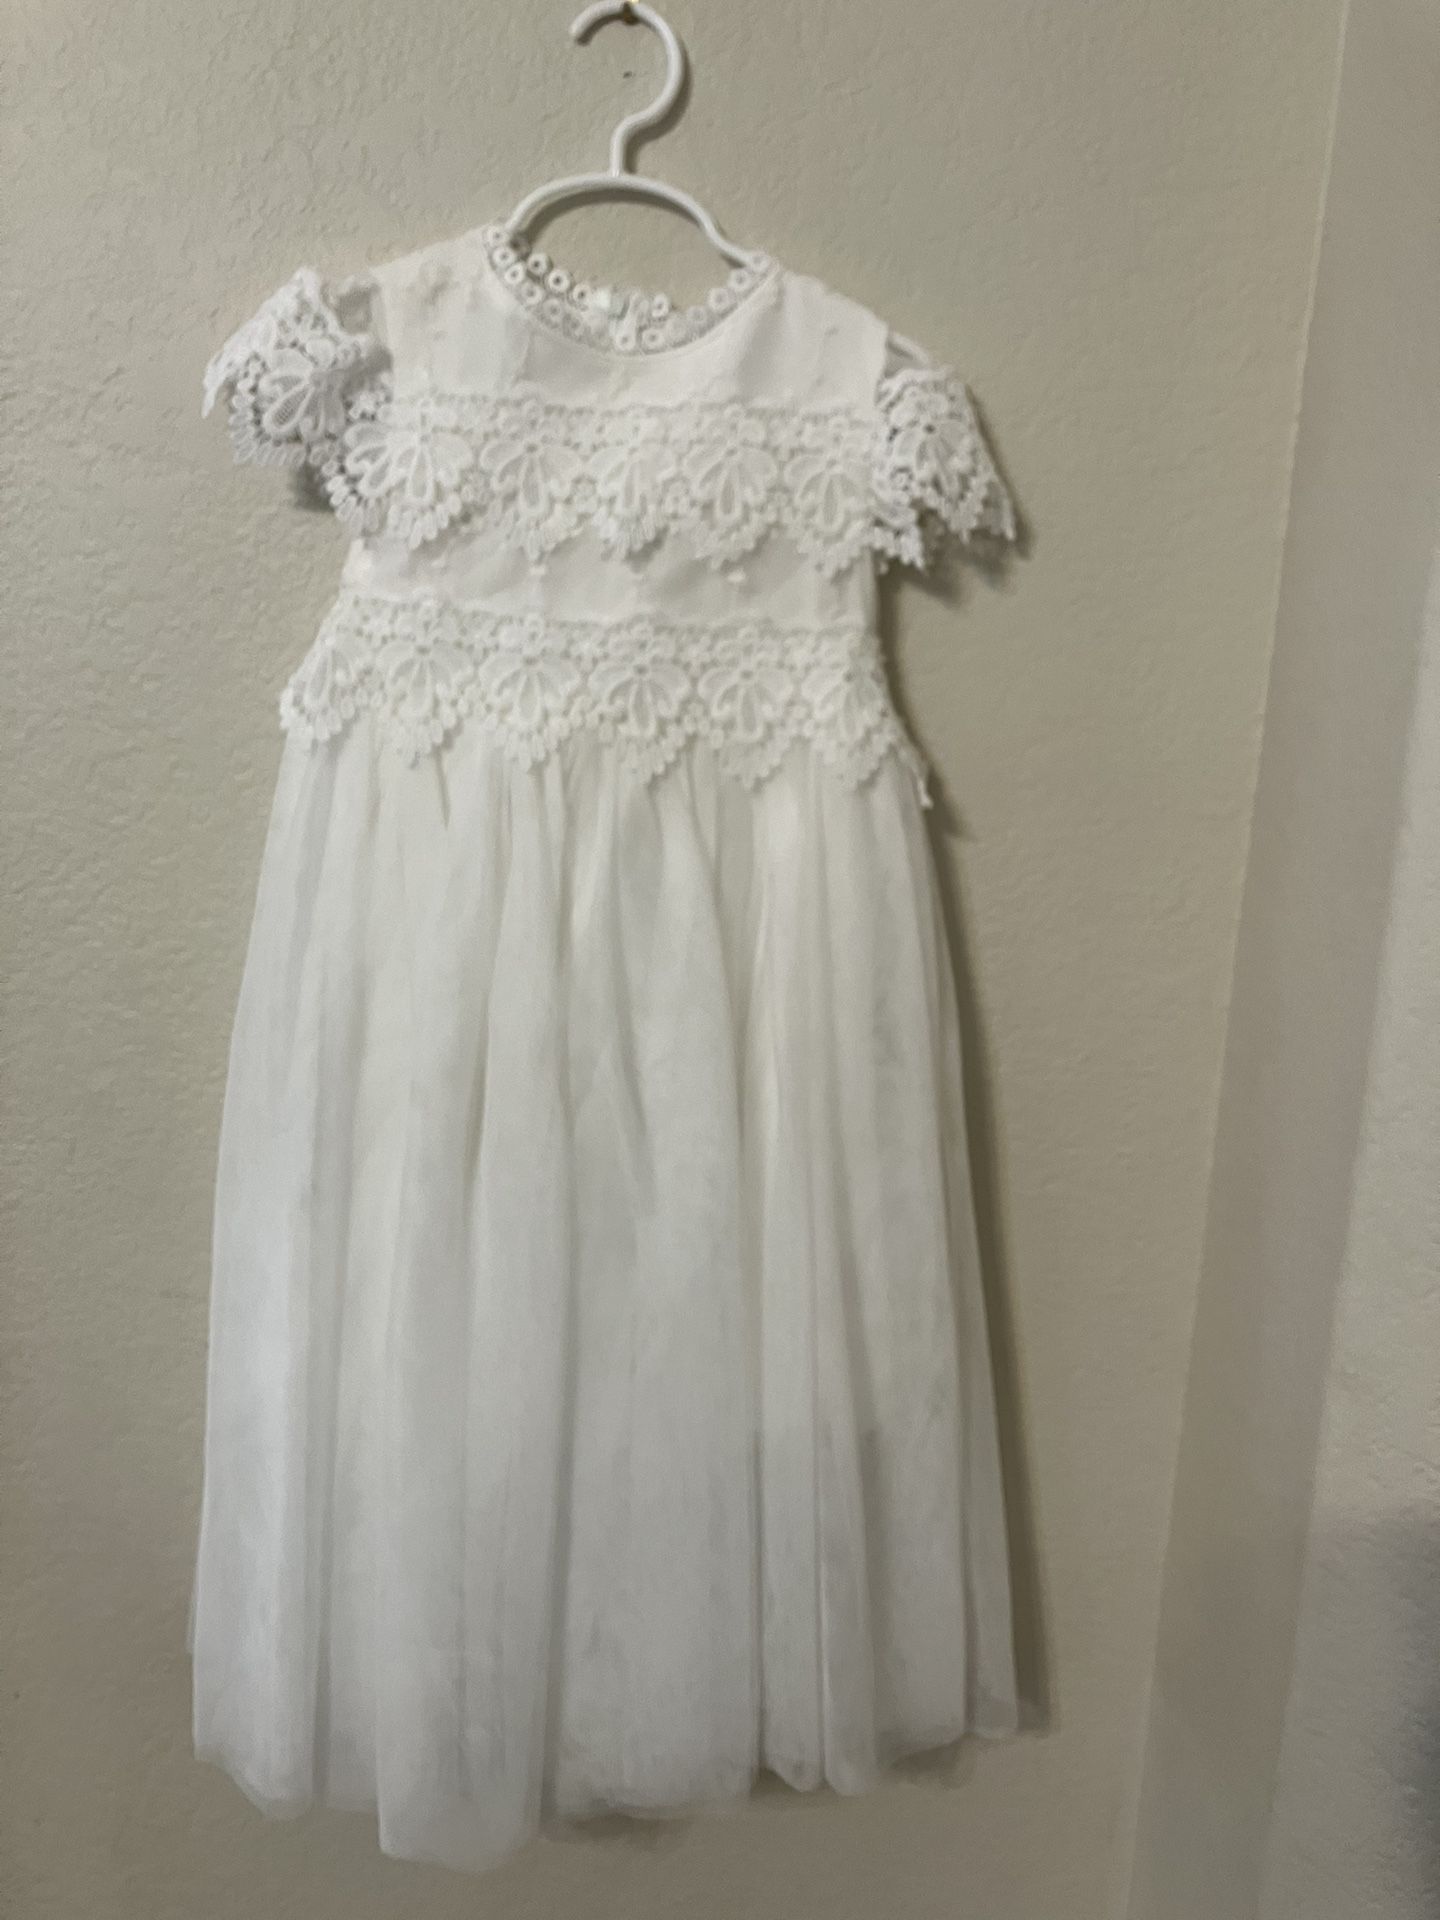 White flower girl dress